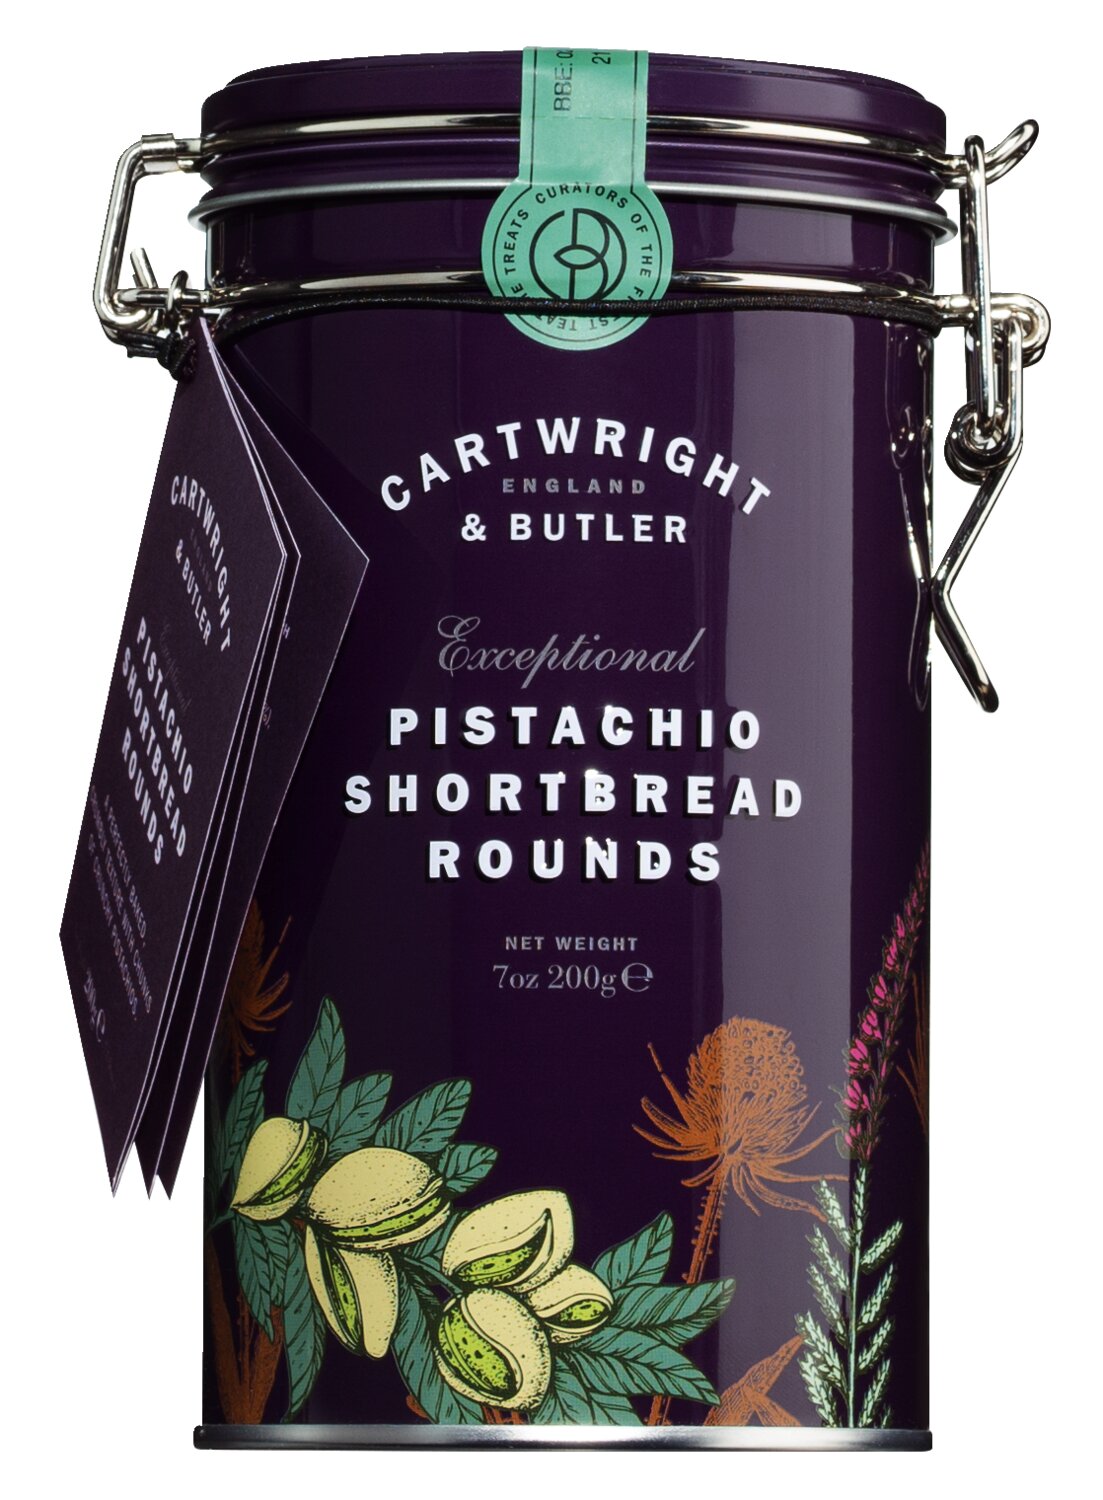 Cartwright & Butler Pistachio Shortbread Rounds